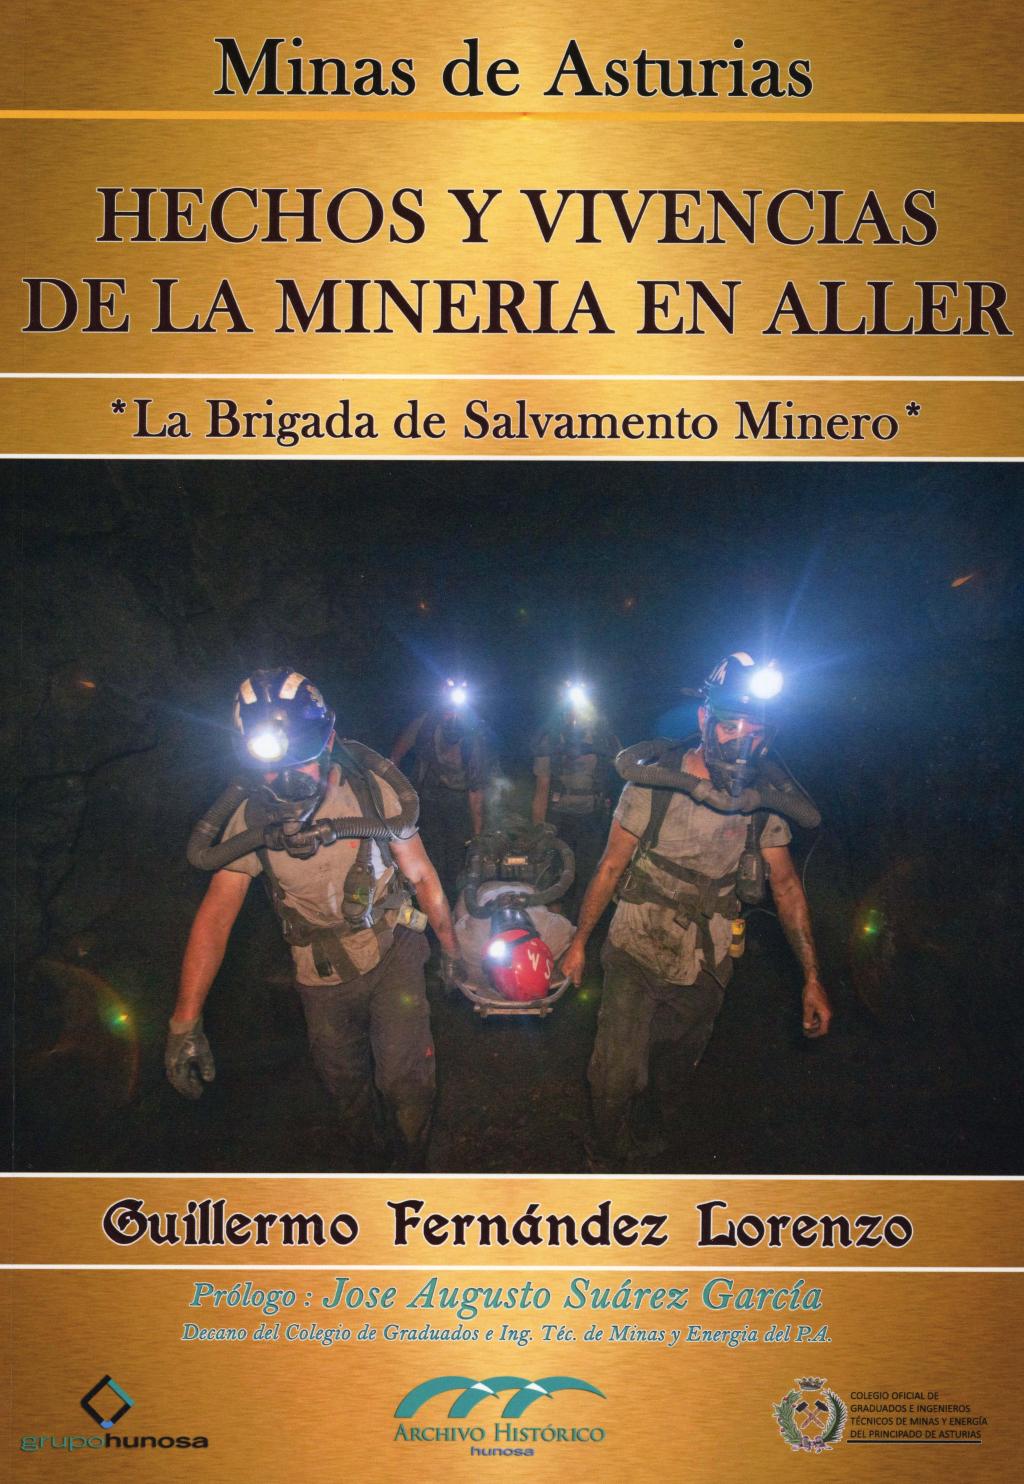 Colaboraciones Hechos y vivencias de la minería en Aller